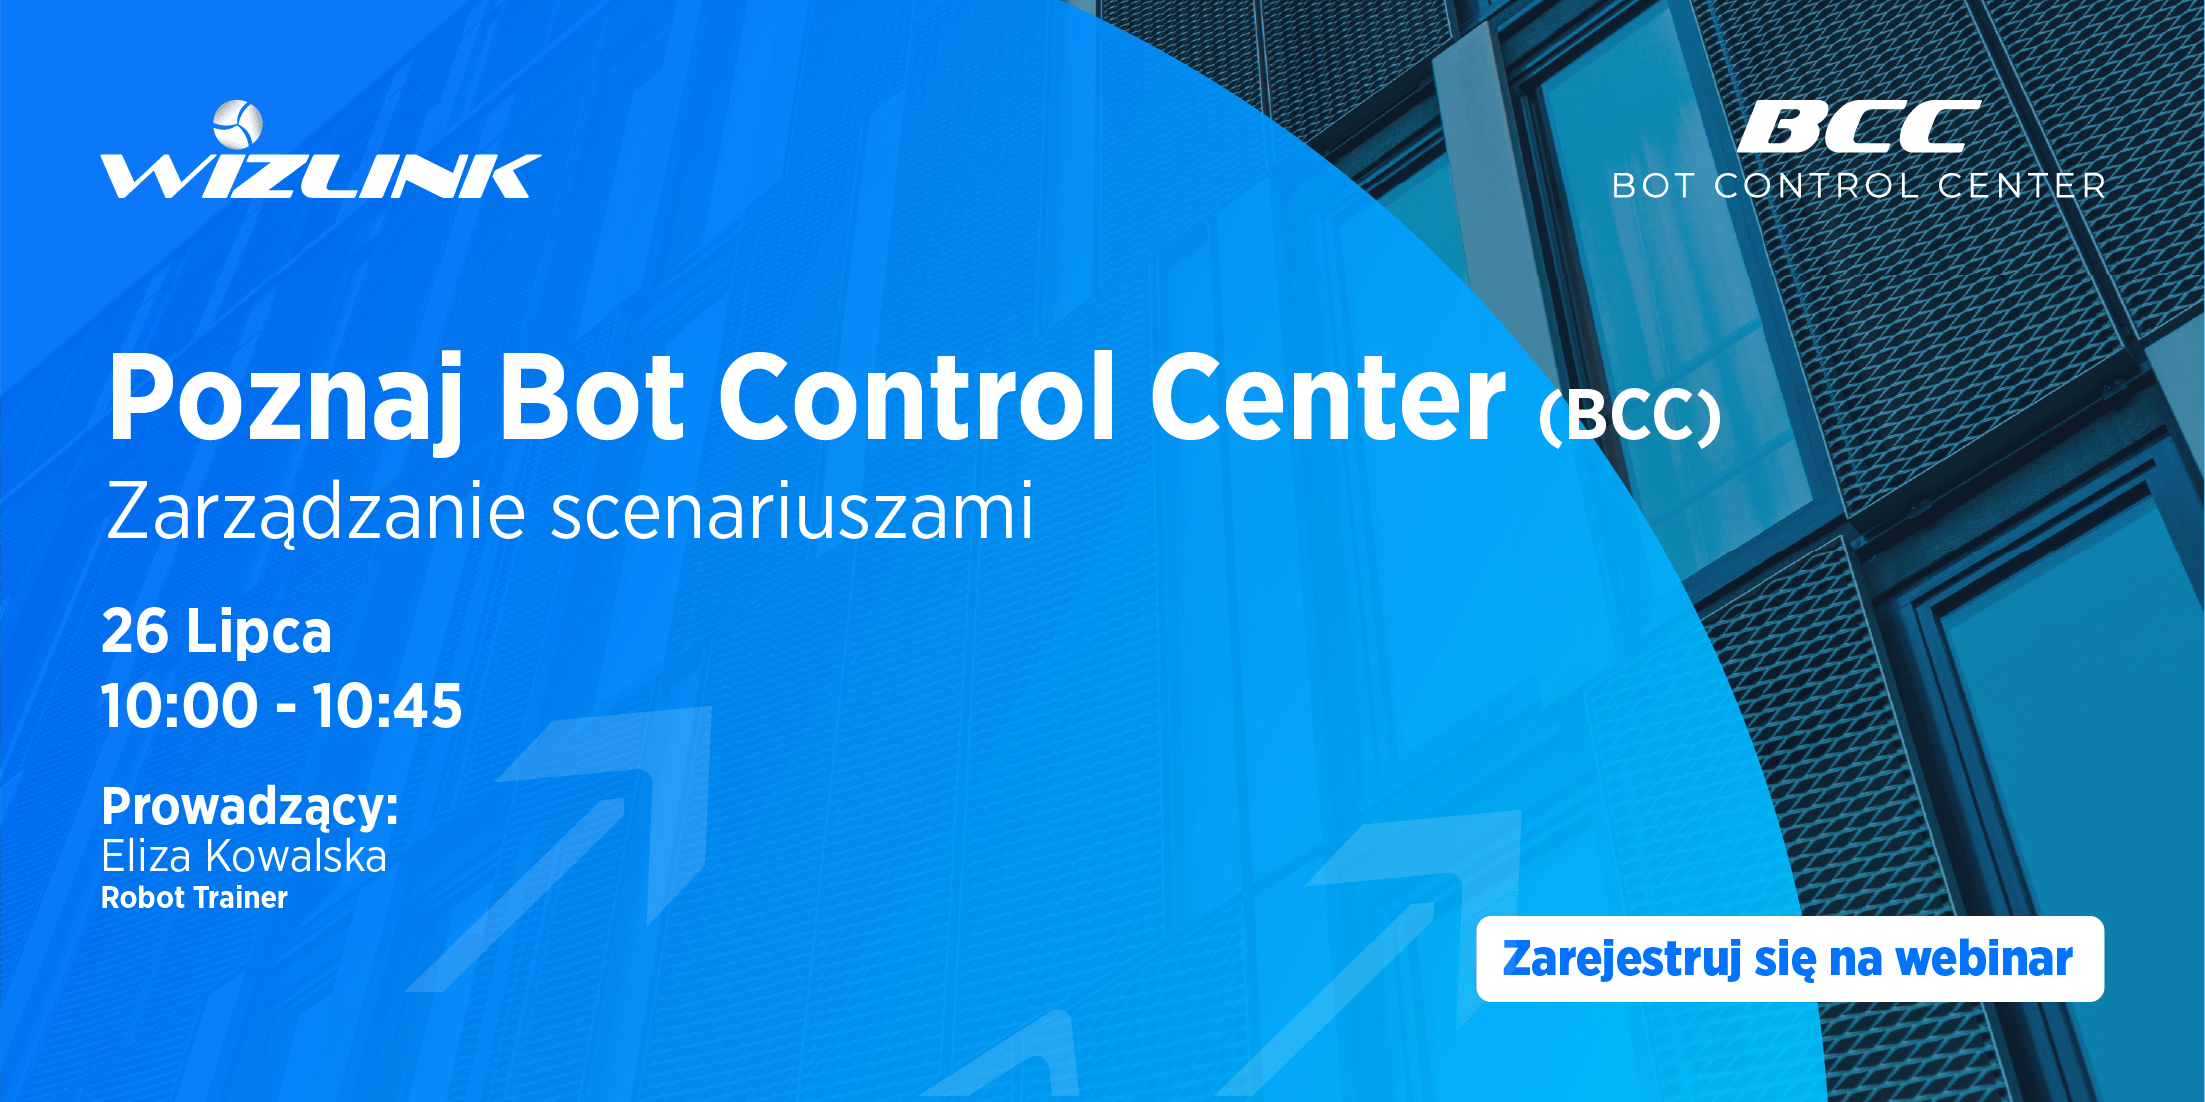 Poznaj Bot Control Center Zarządzanie scenariuszami